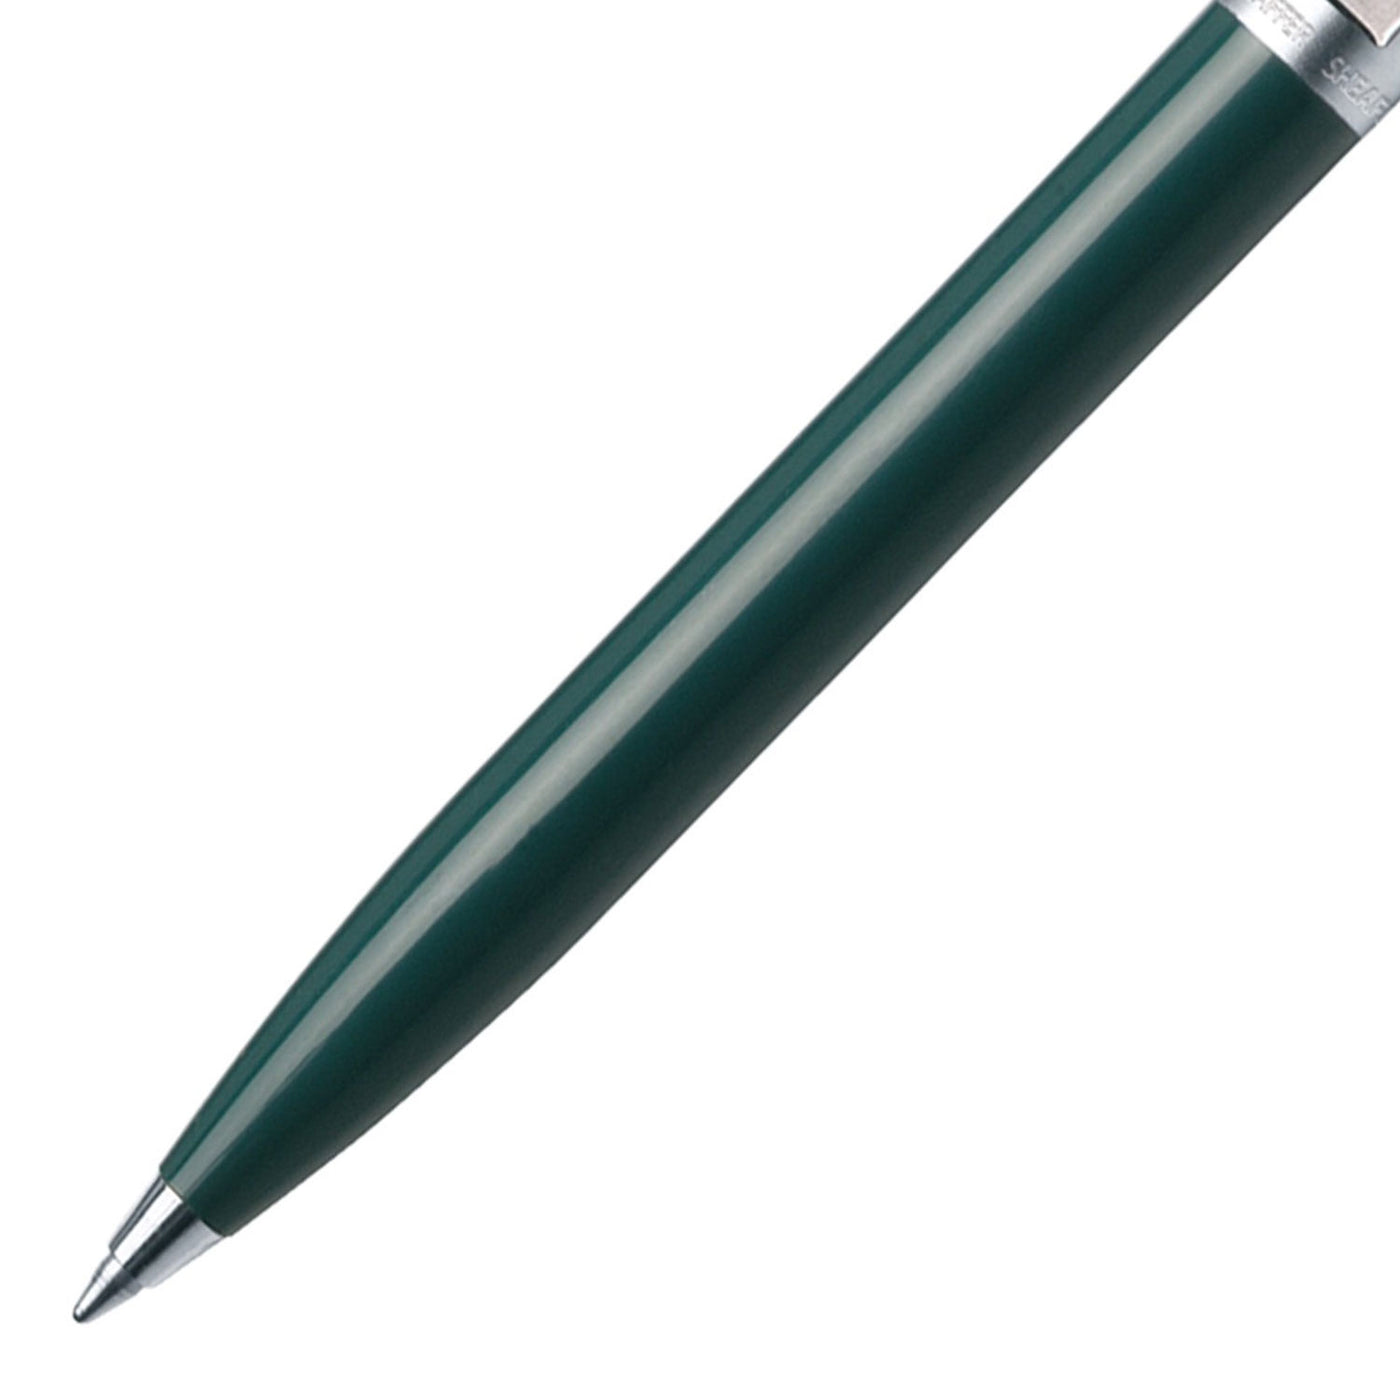 Sheaffer Sentinel Ball Pen - Green & Brushed Chrome 2